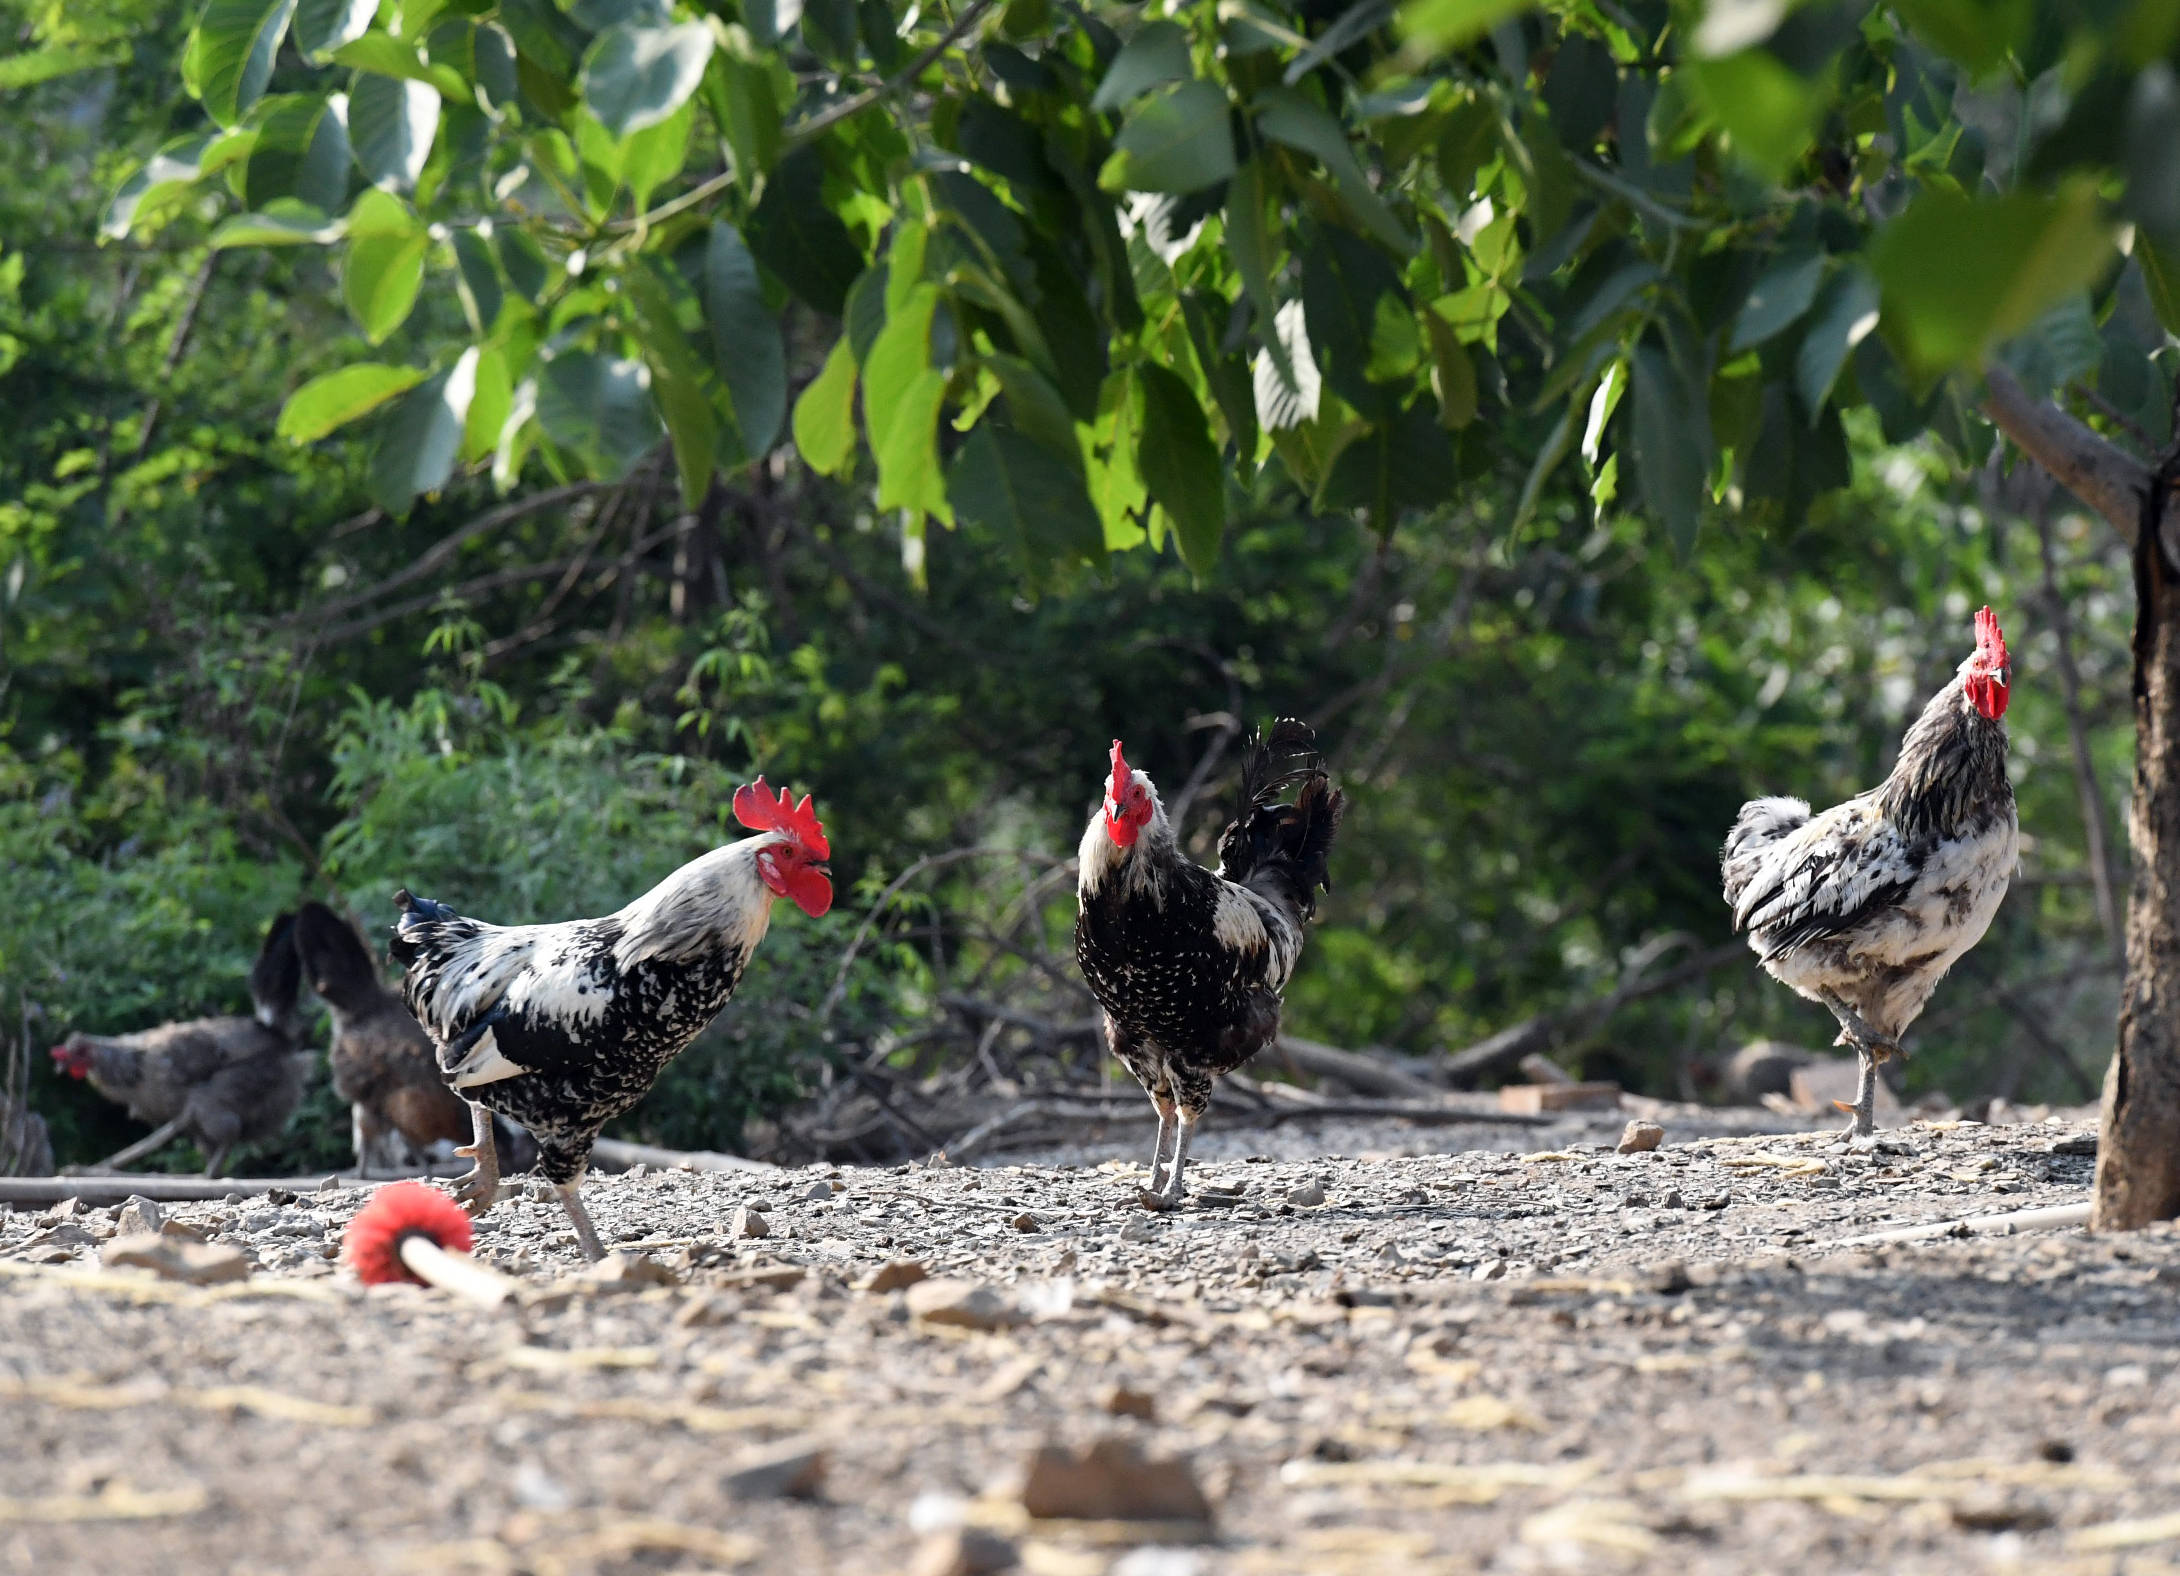 6月19日,在天津东山鹊山鸡养殖专业合作社的养殖基地,鹊山鸡在林间